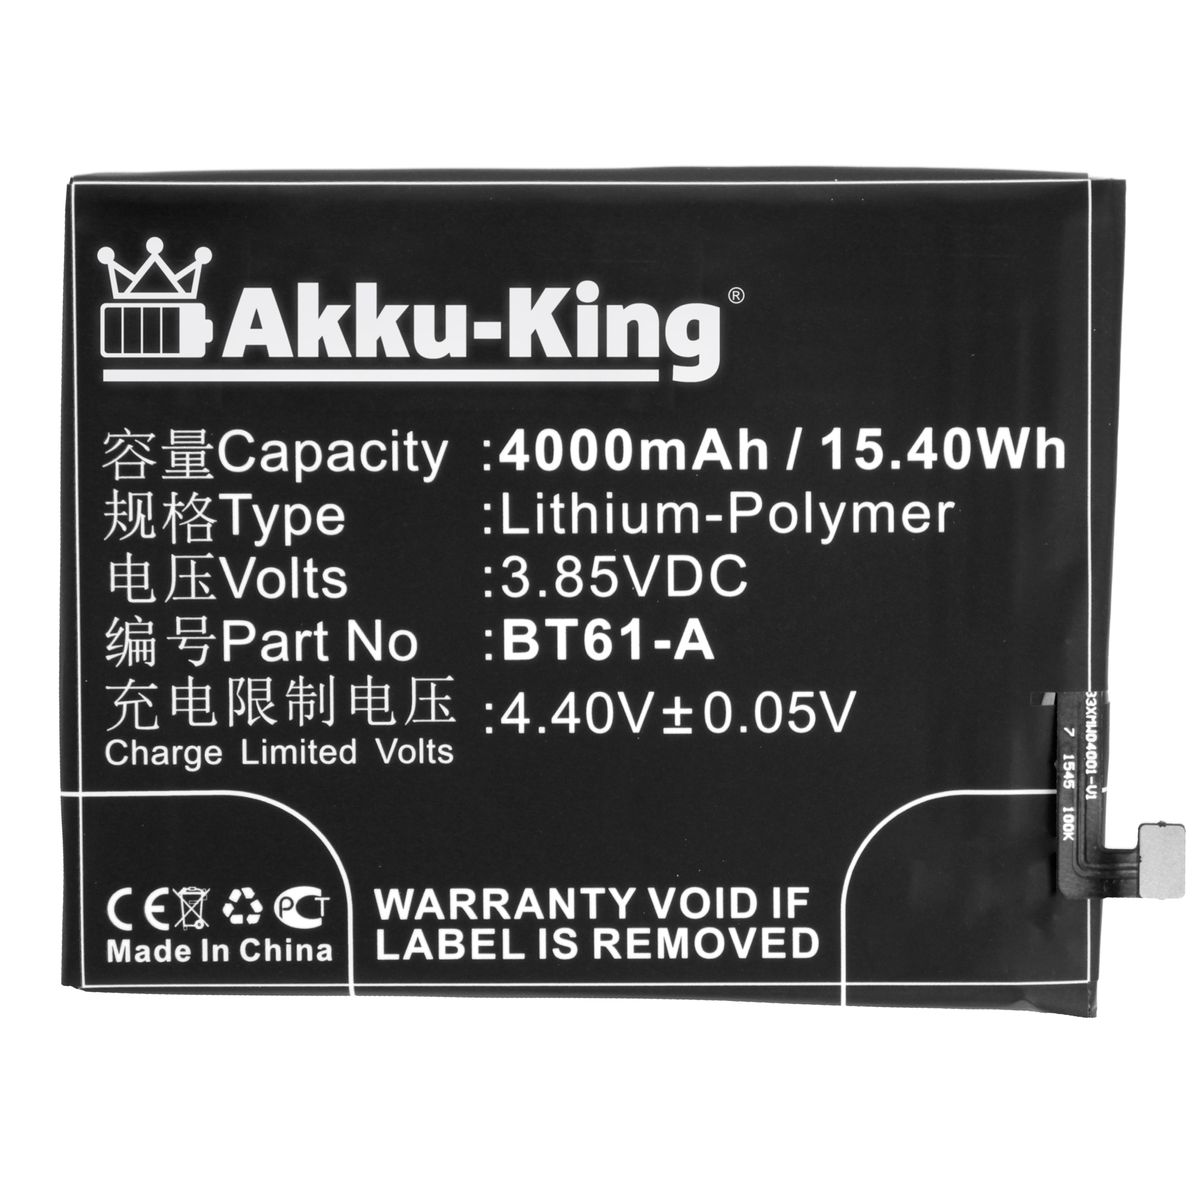 AKKU-KING Akku kompatibel mit Meizu Handy-Akku, 4000mAh 3.7 Volt, BT61-A Li-Polymer